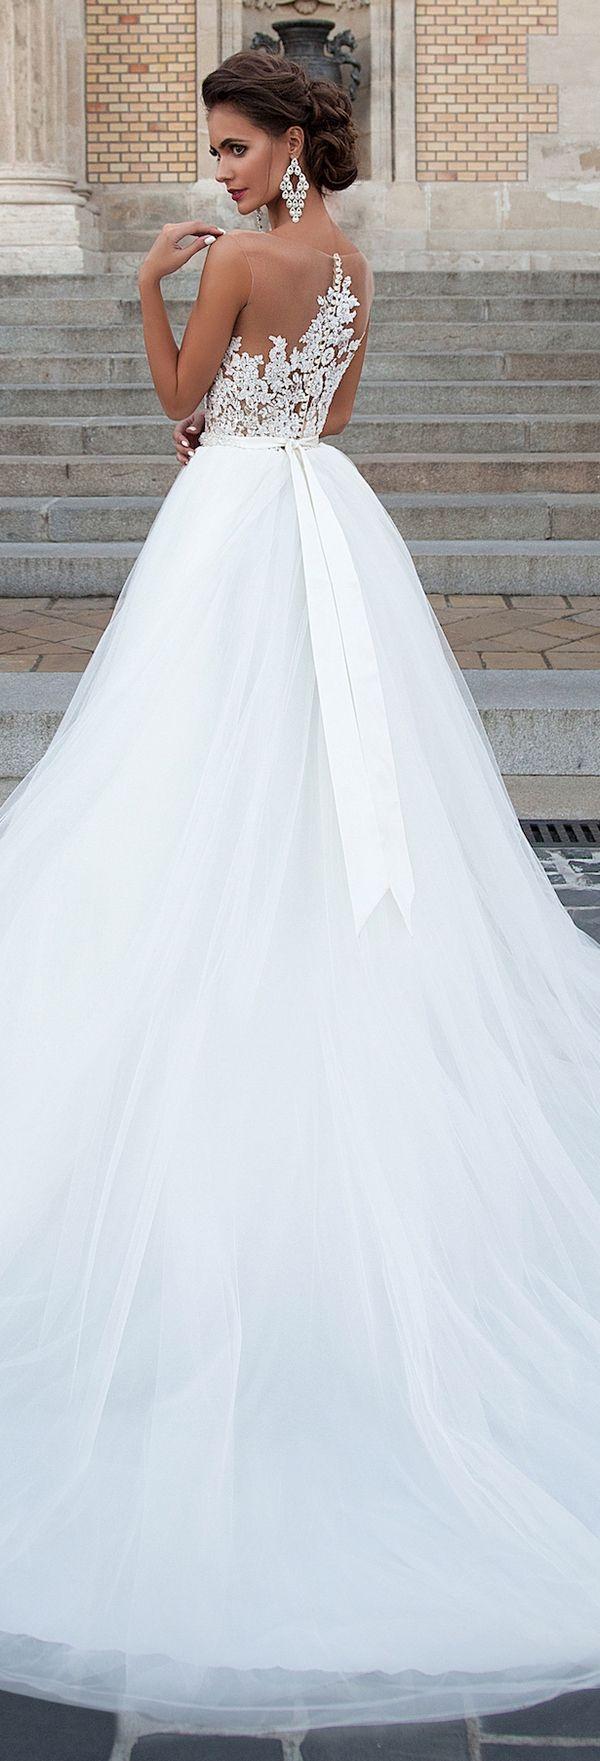 زفاف - The Most Hottest Milla Nova 2016 Wedding Dresses